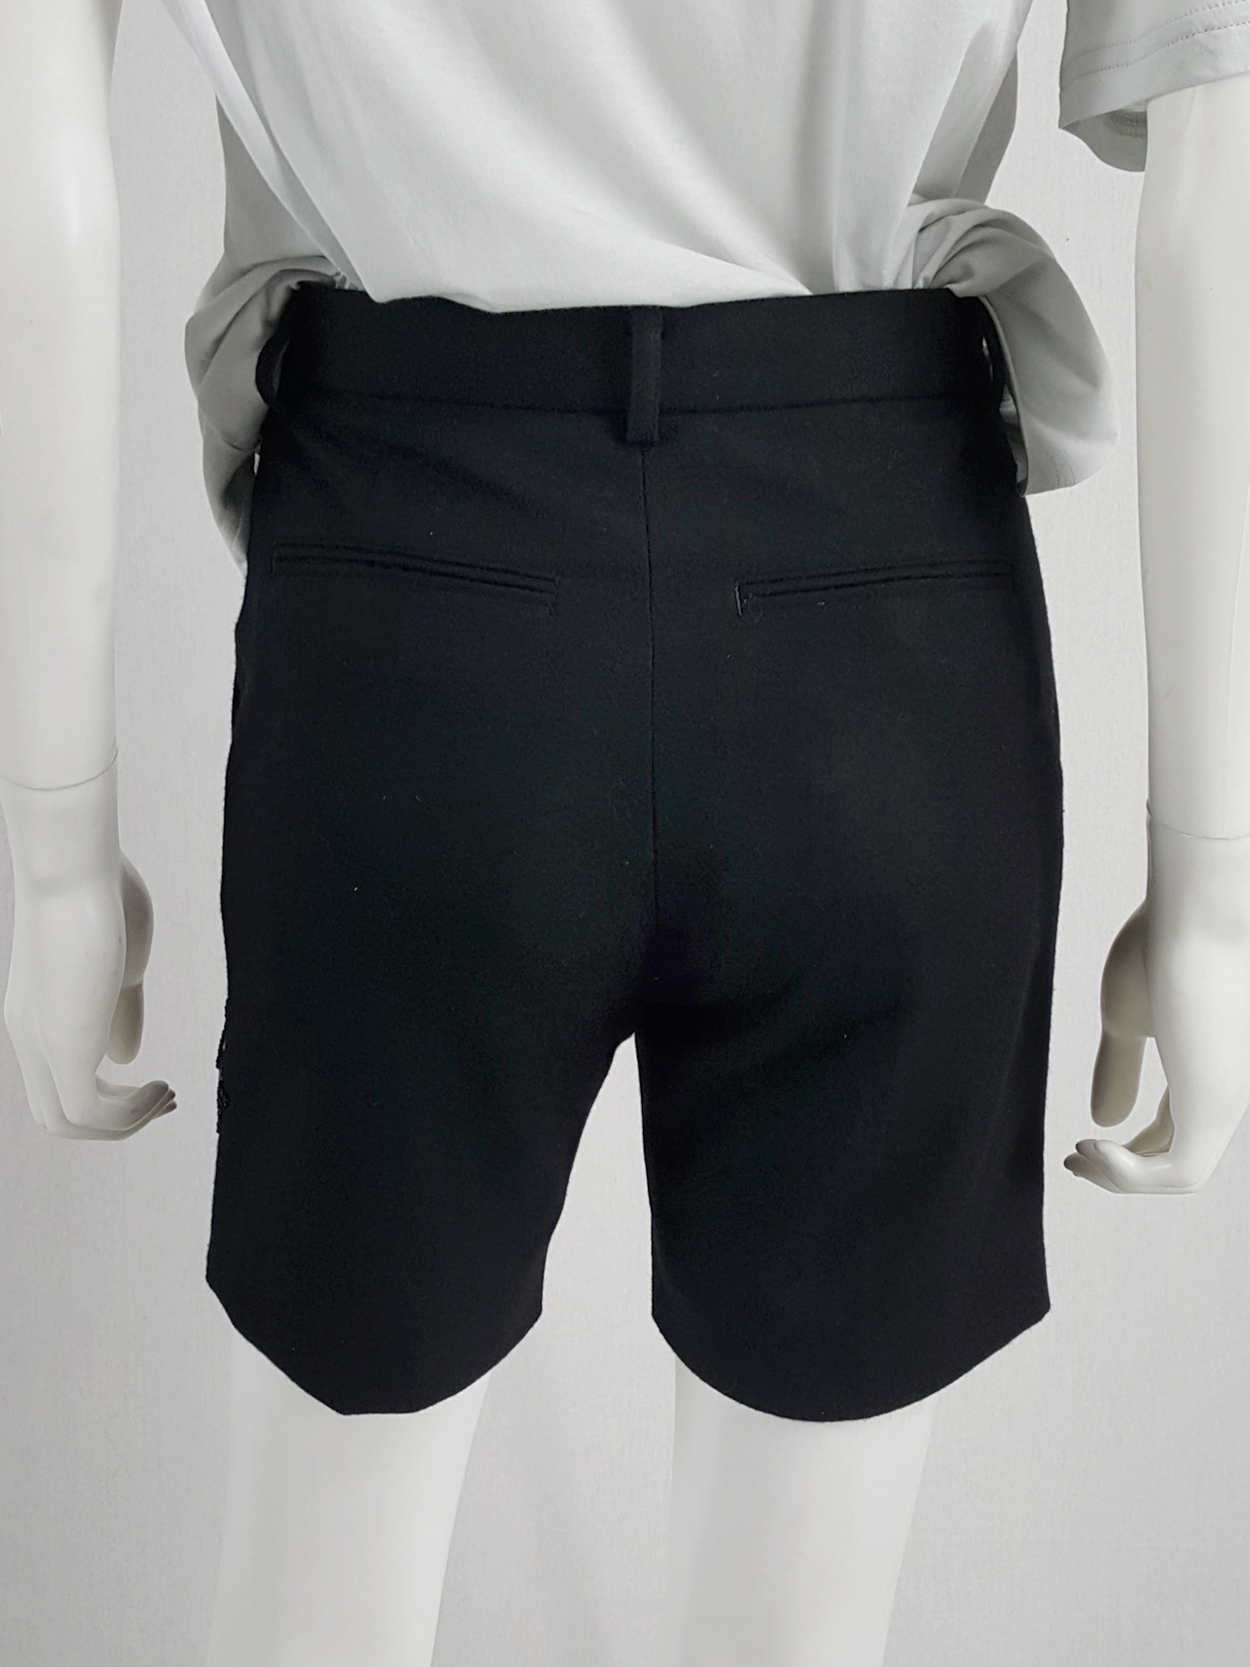 Noir Kei Ninomiya black shorts with knit circular detail — fall 2013 ...